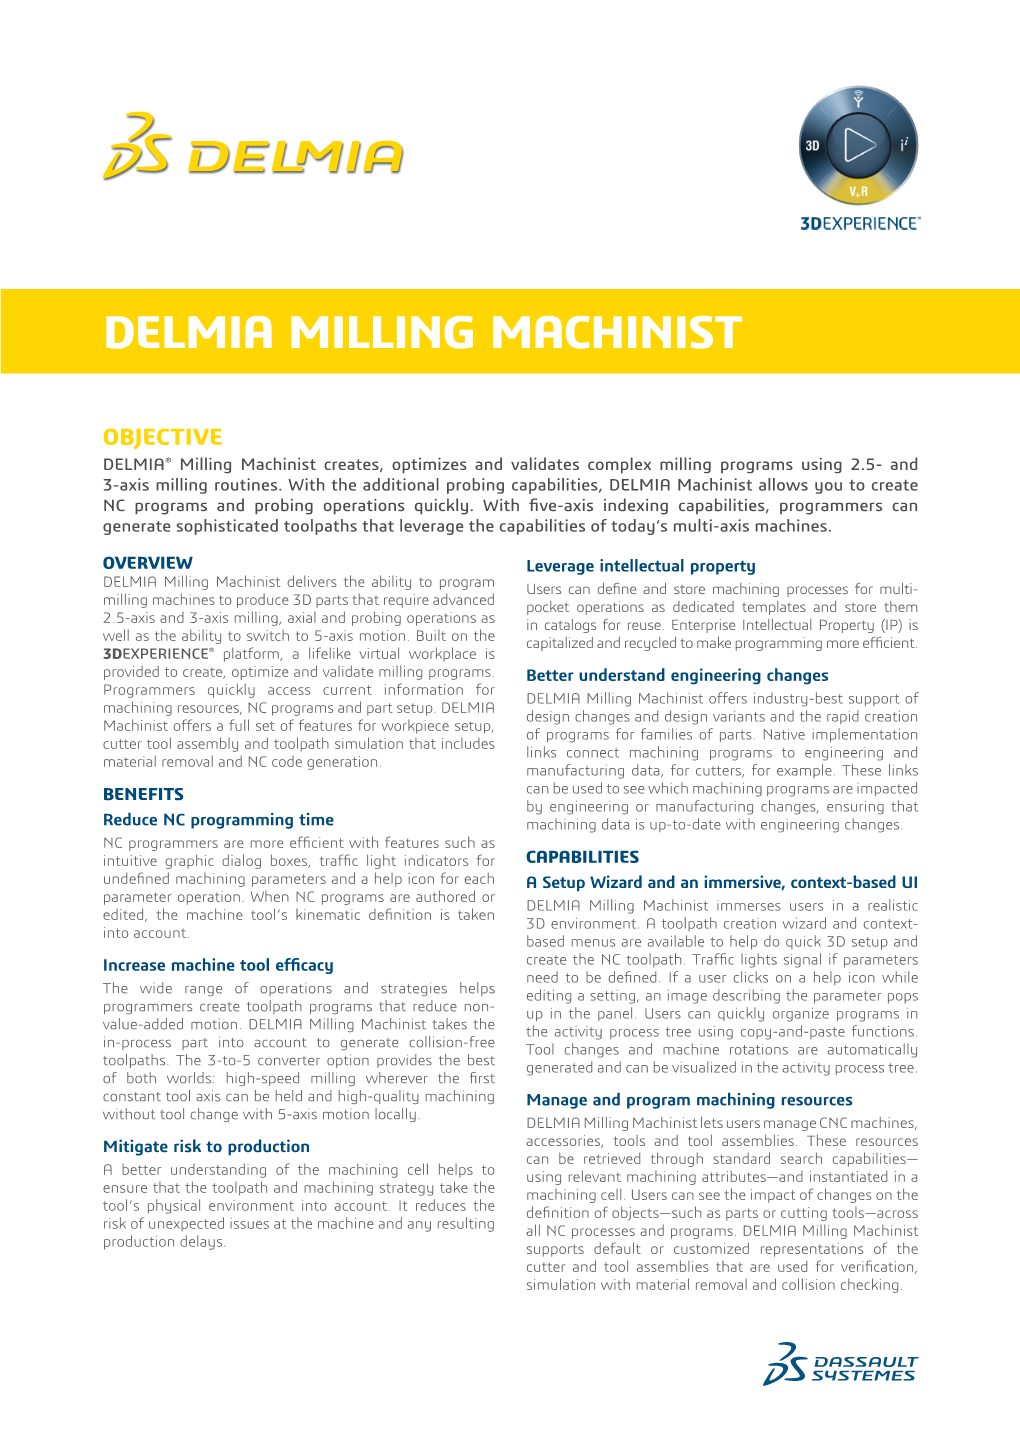 Delmia Milling Machinist